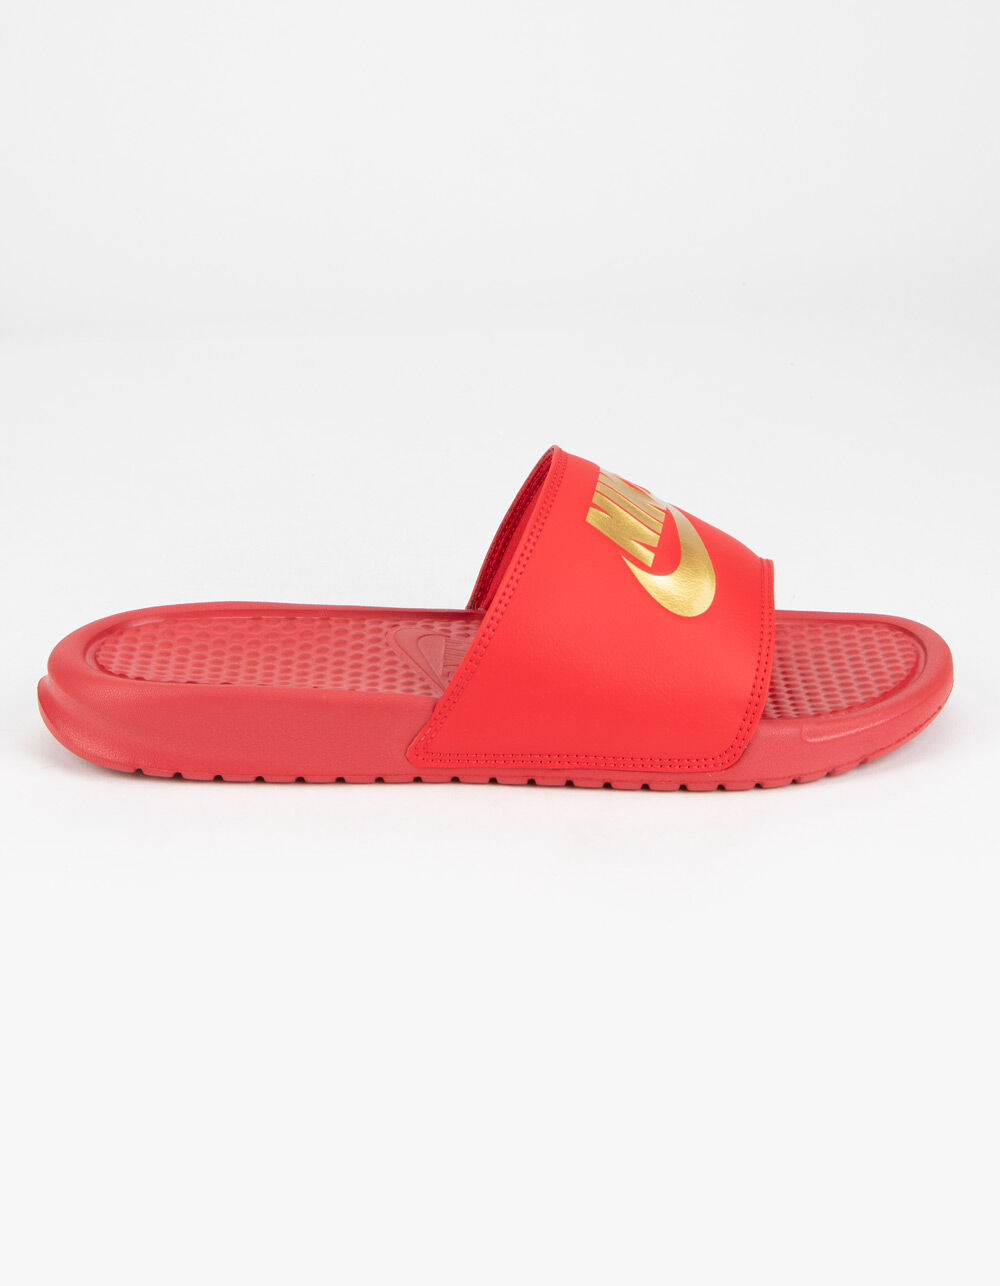 NIKE Benassi JDI Mens Red Slide Sandals image number 1